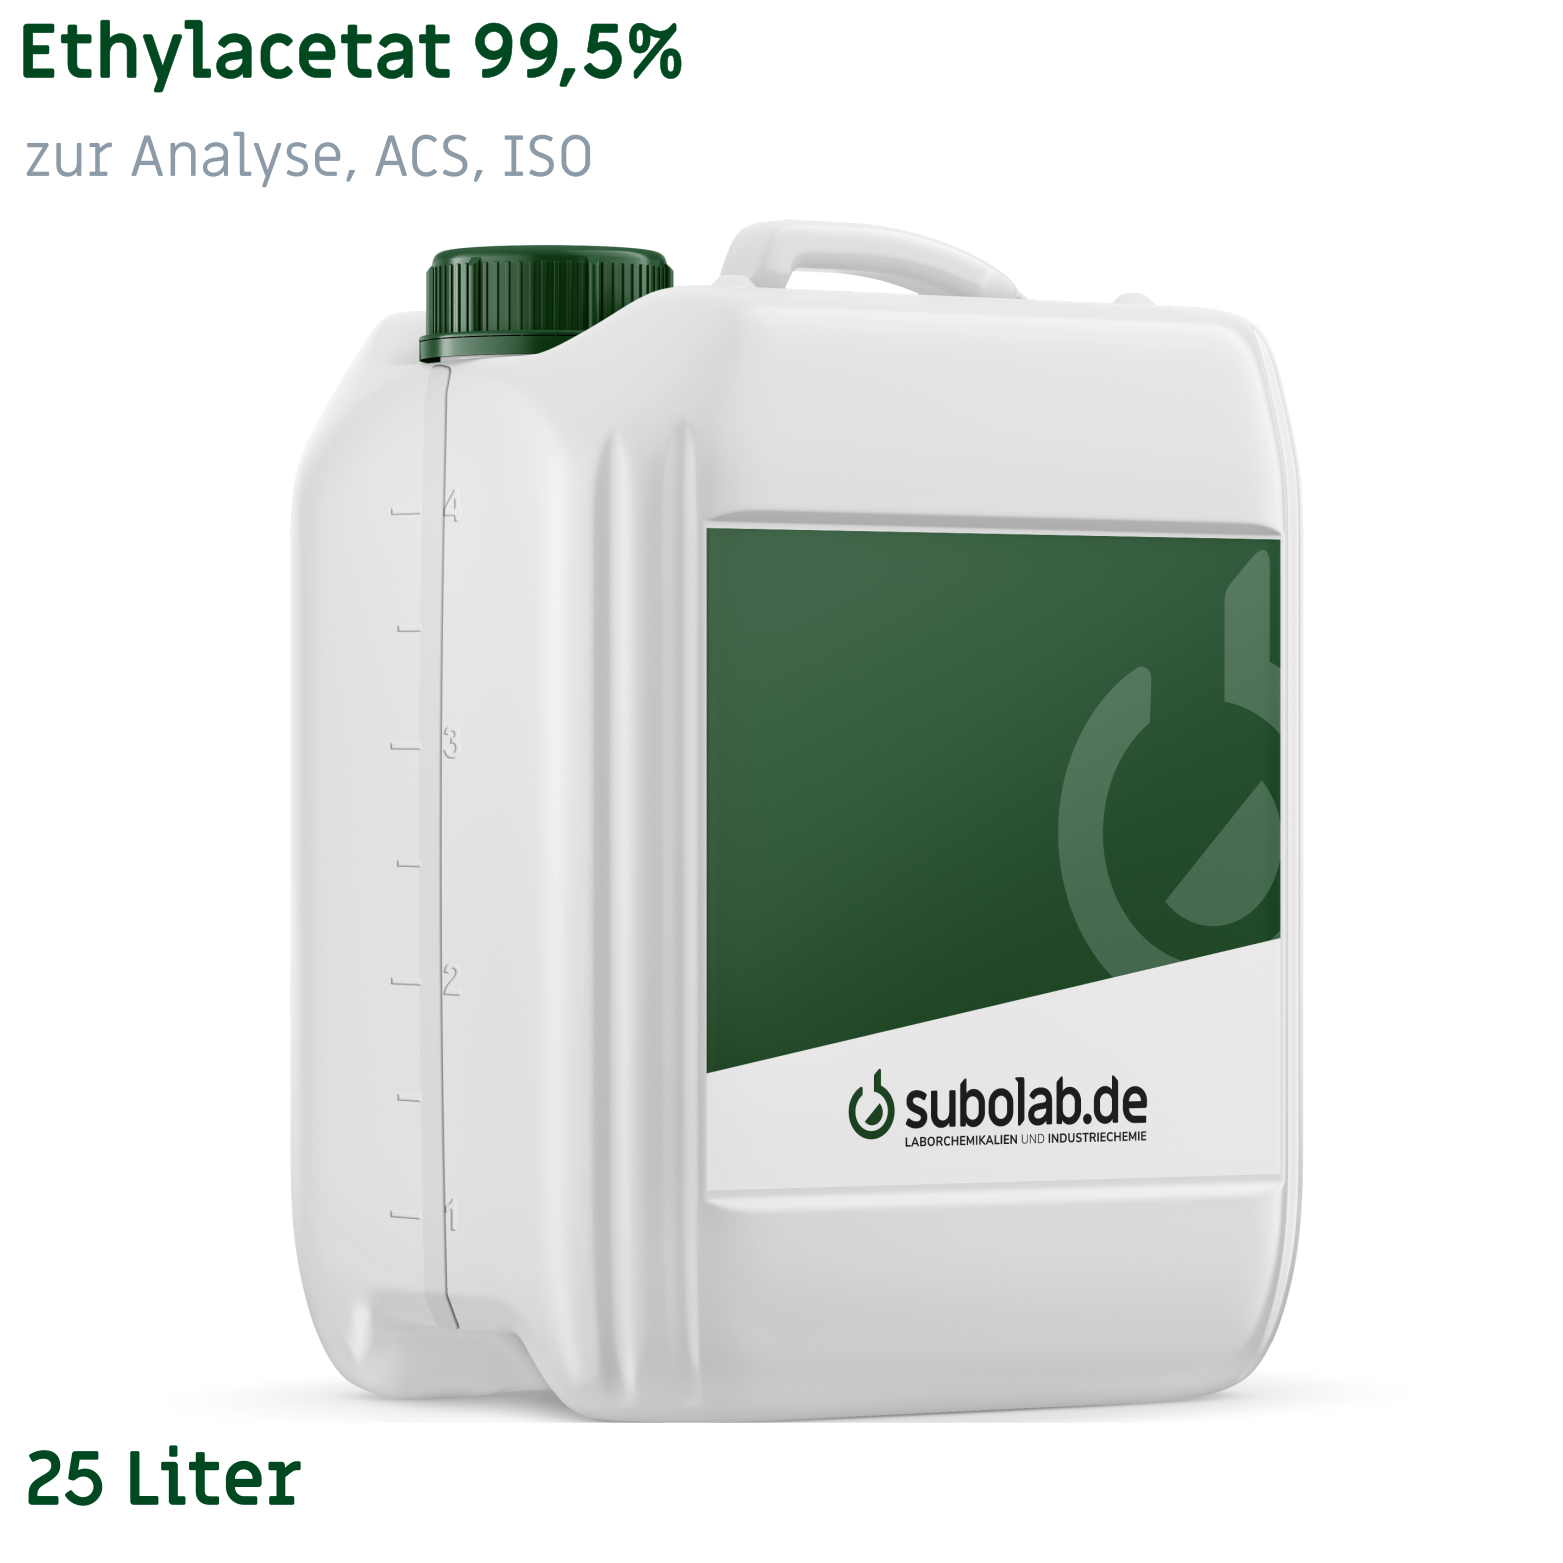 Bild von Ethylacetat 99,5% zur Analyse, ACS, ISO (25 Liter)